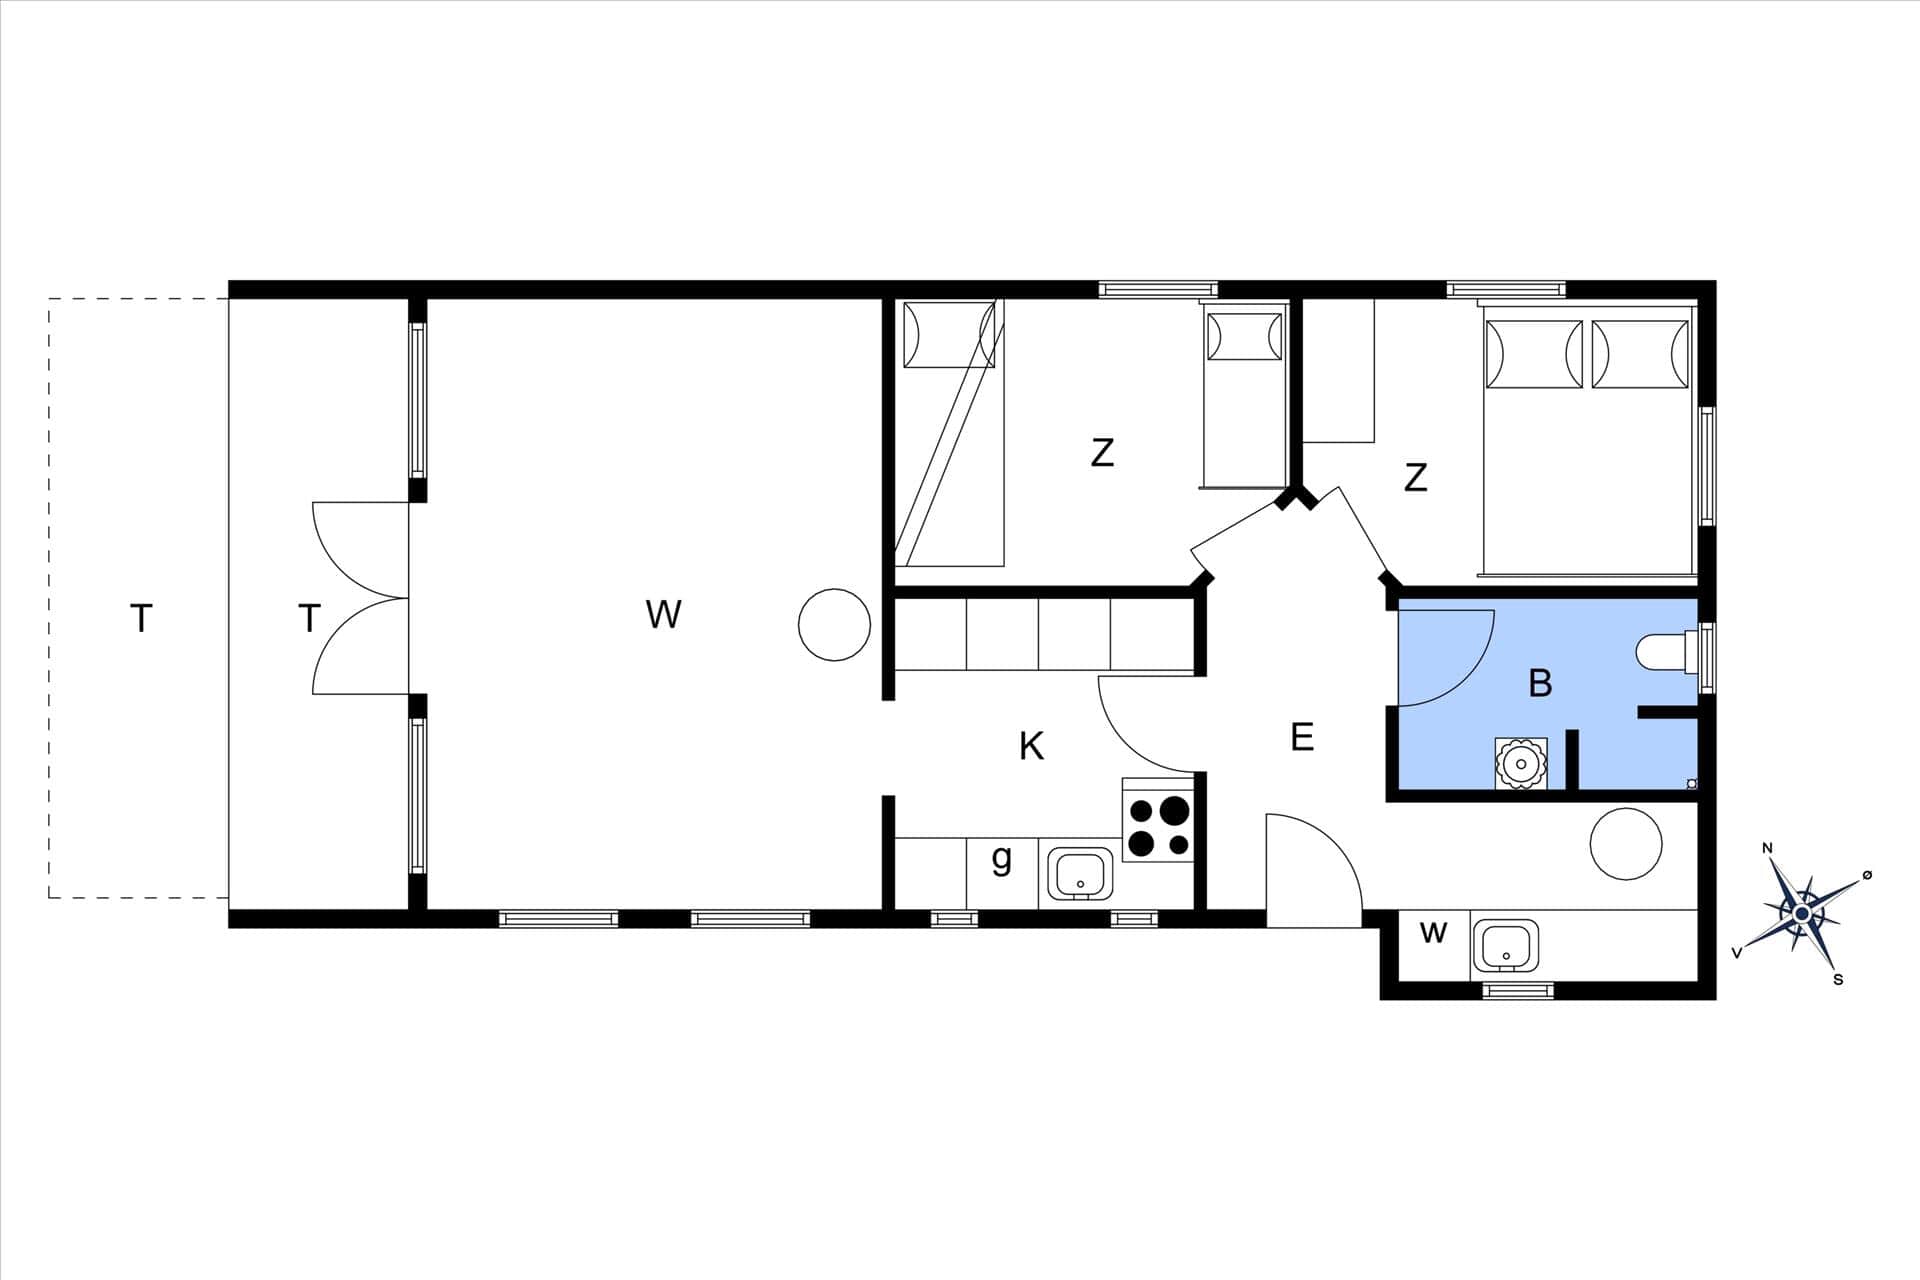 Interior 20-3 Holiday-home M64130, Skåstrup Strand Øst 85, DK - 5400 Bogense